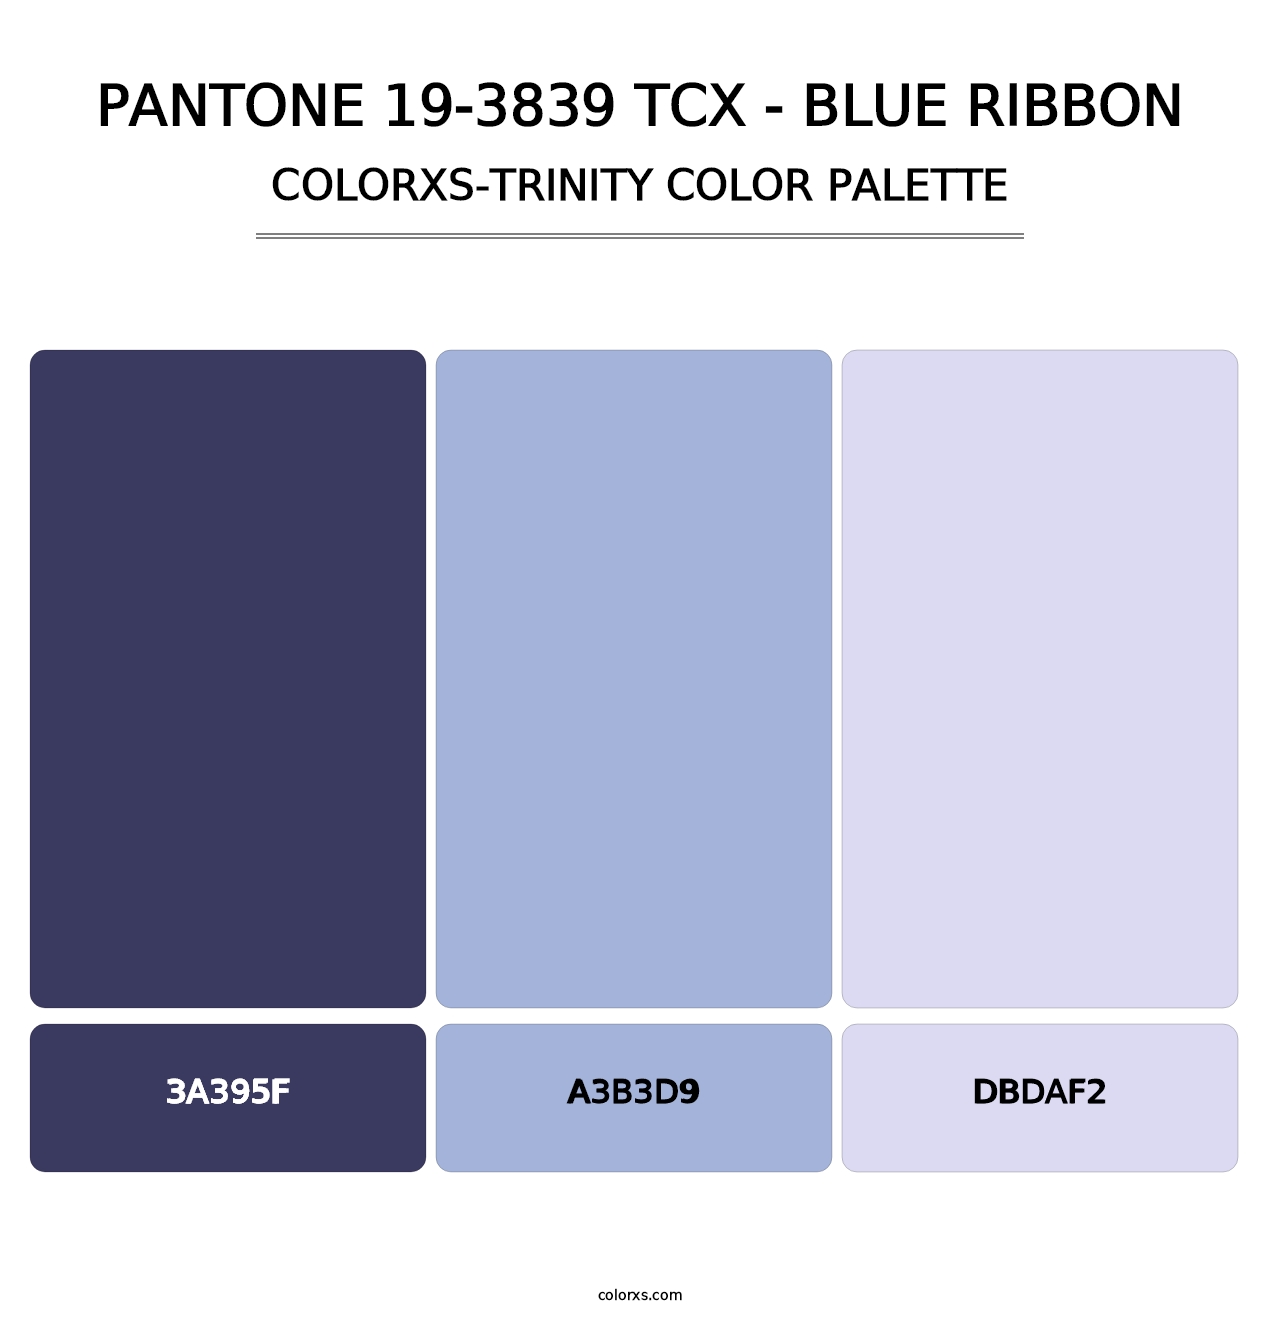 PANTONE 19-3839 TCX - Blue Ribbon - Colorxs Trinity Palette